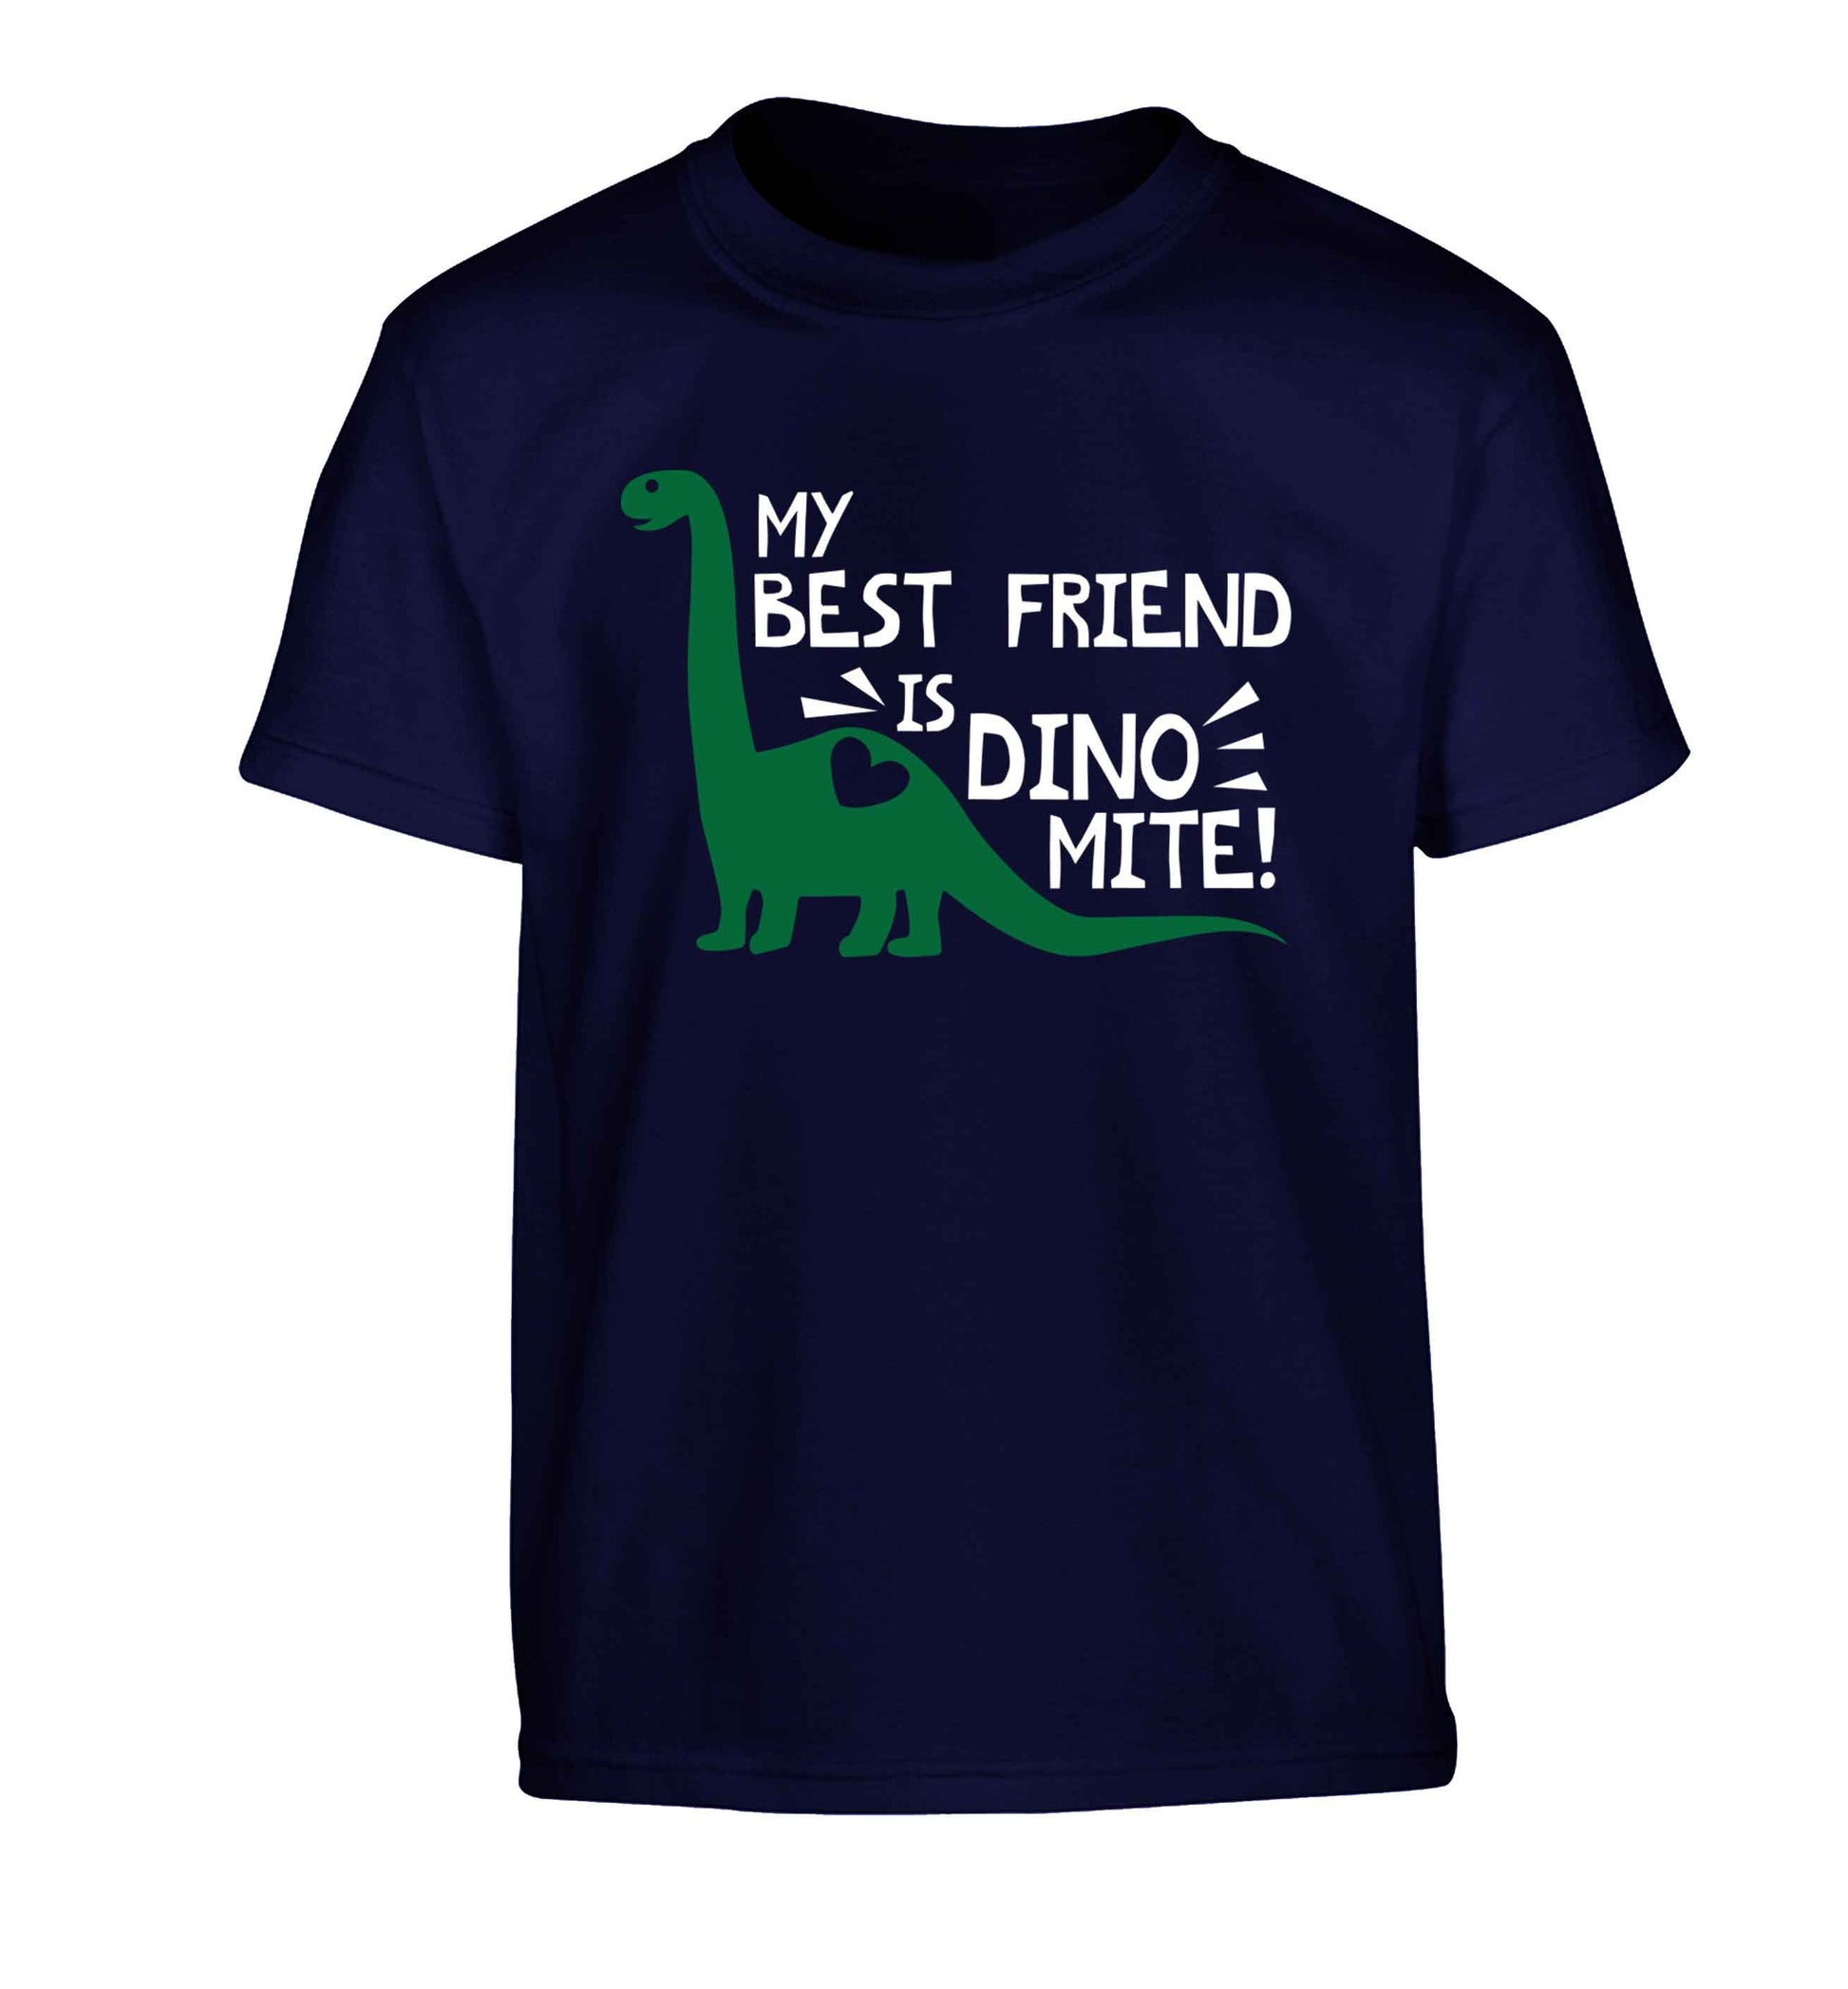 My best friend is dinomite! Children's navy Tshirt 12-13 Years